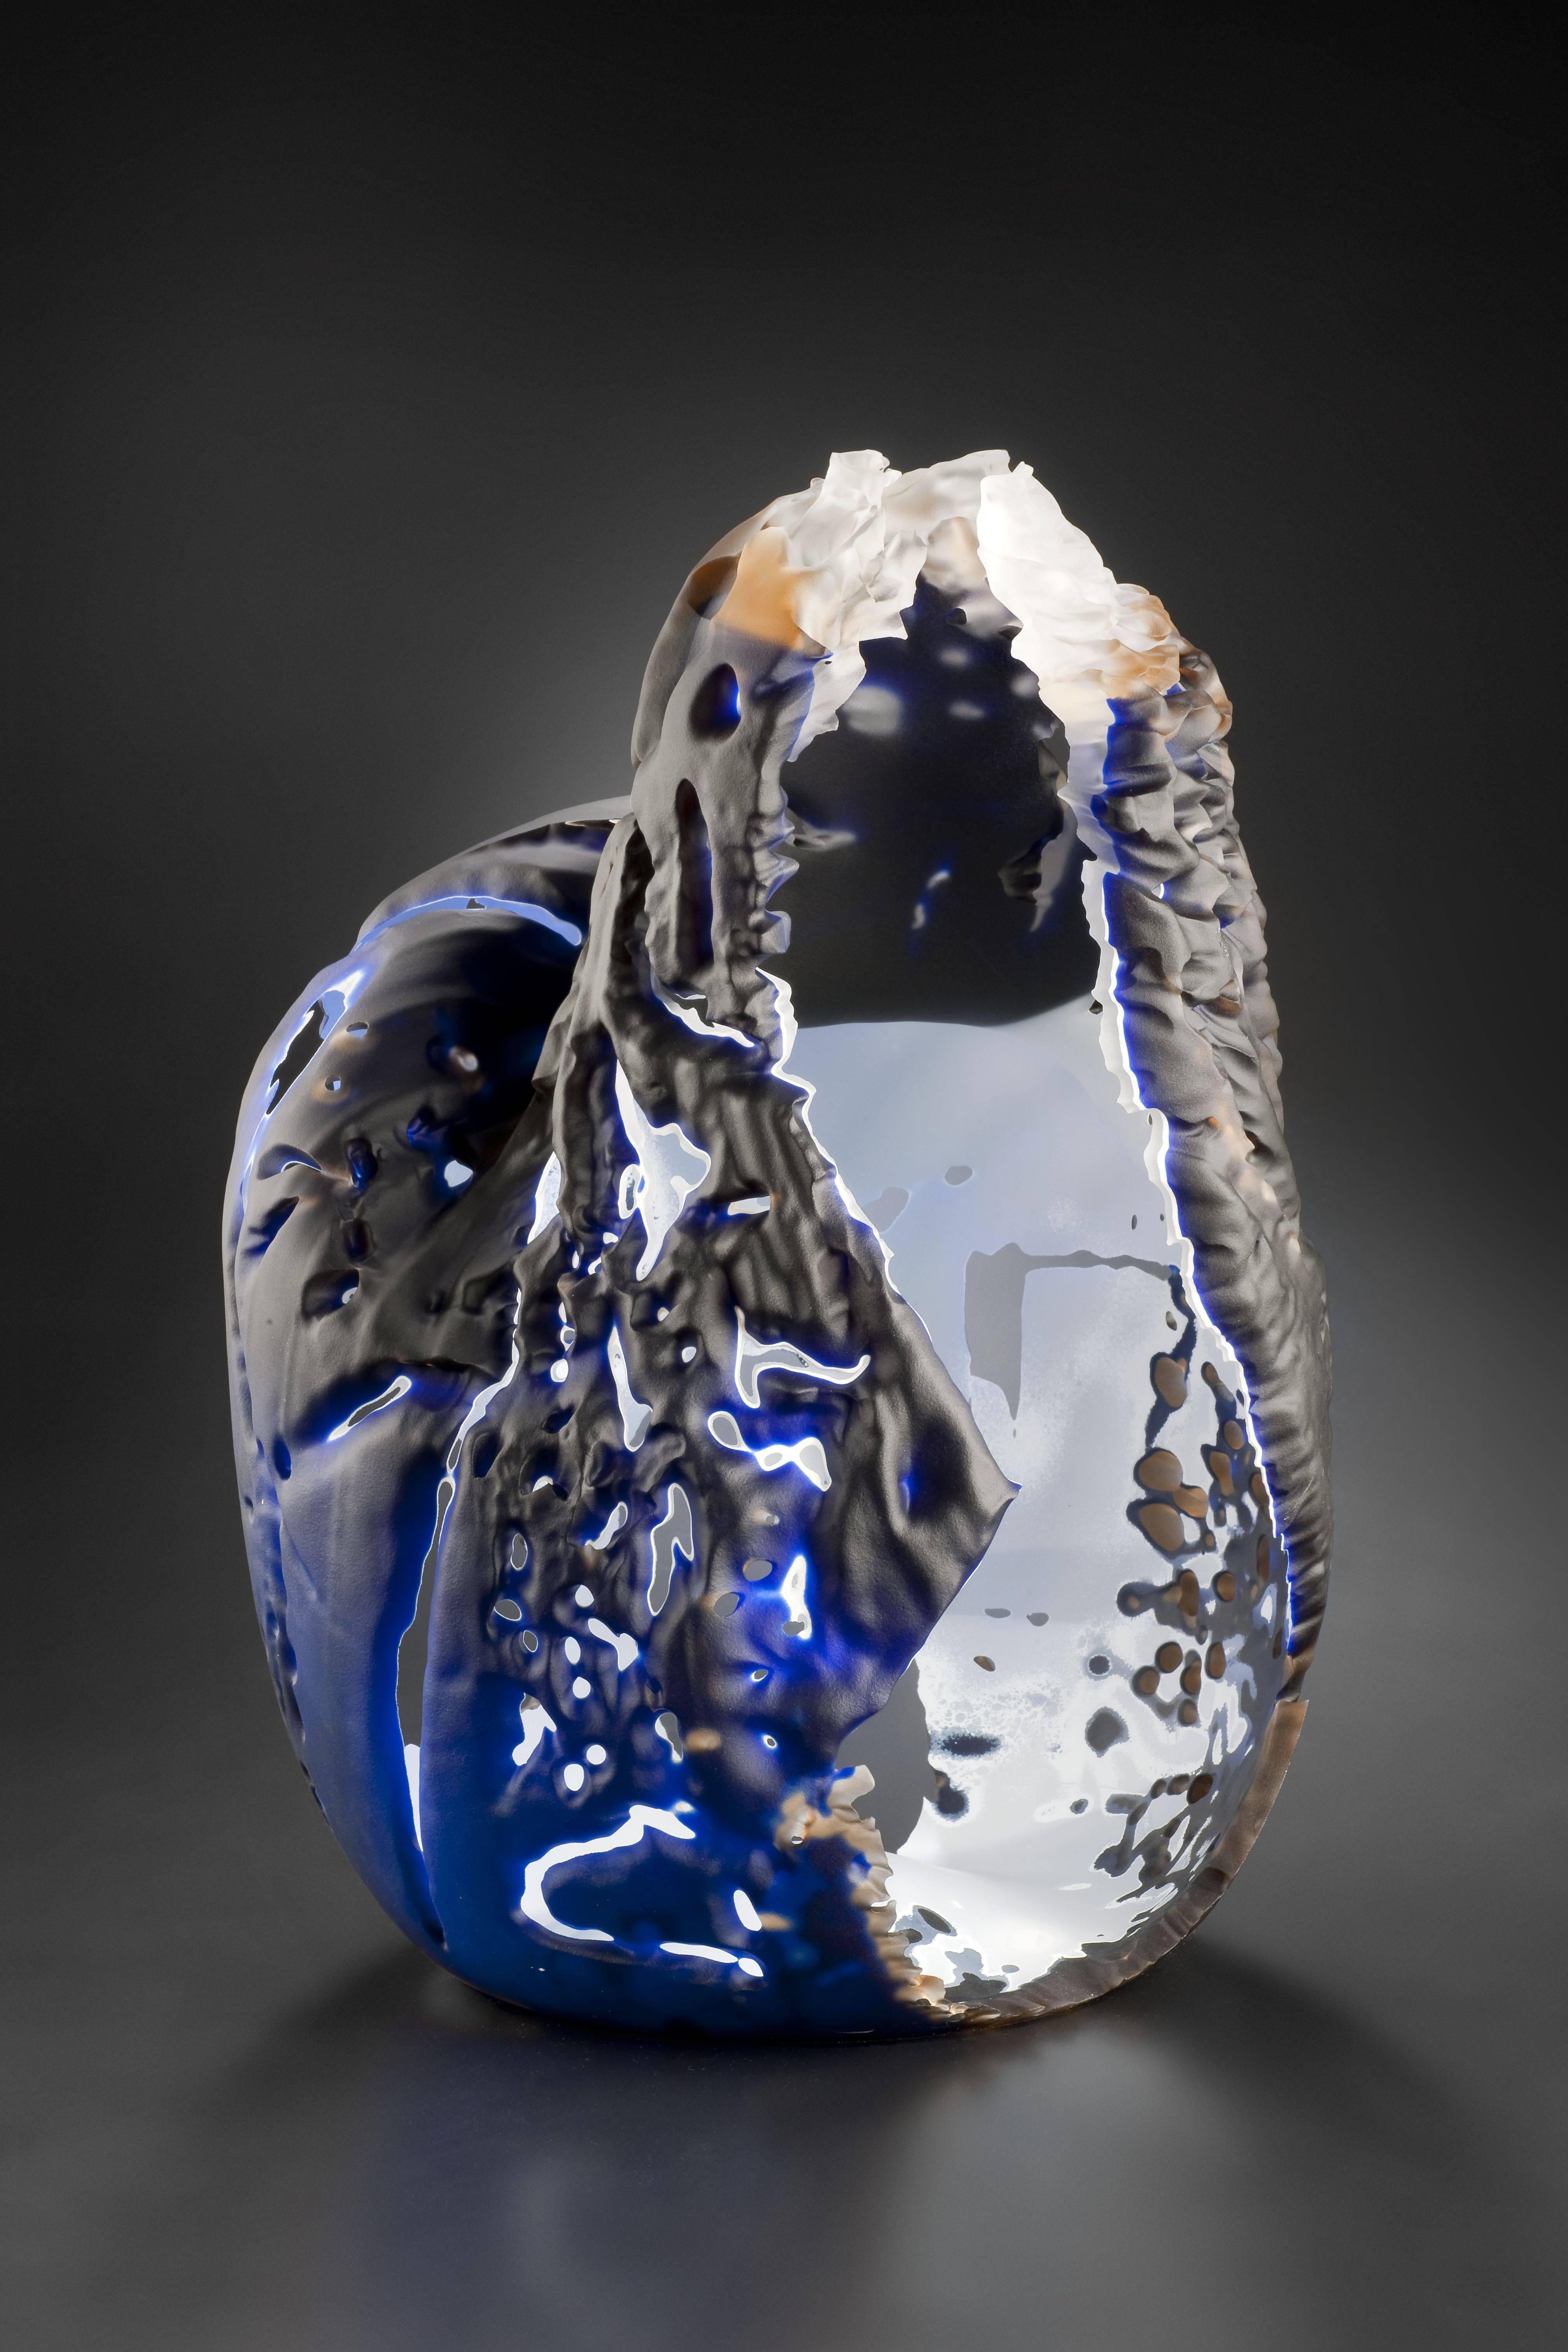 Vaclav Rezac Abstract Sculpture - "Element 15" Blown Glass Sculpture